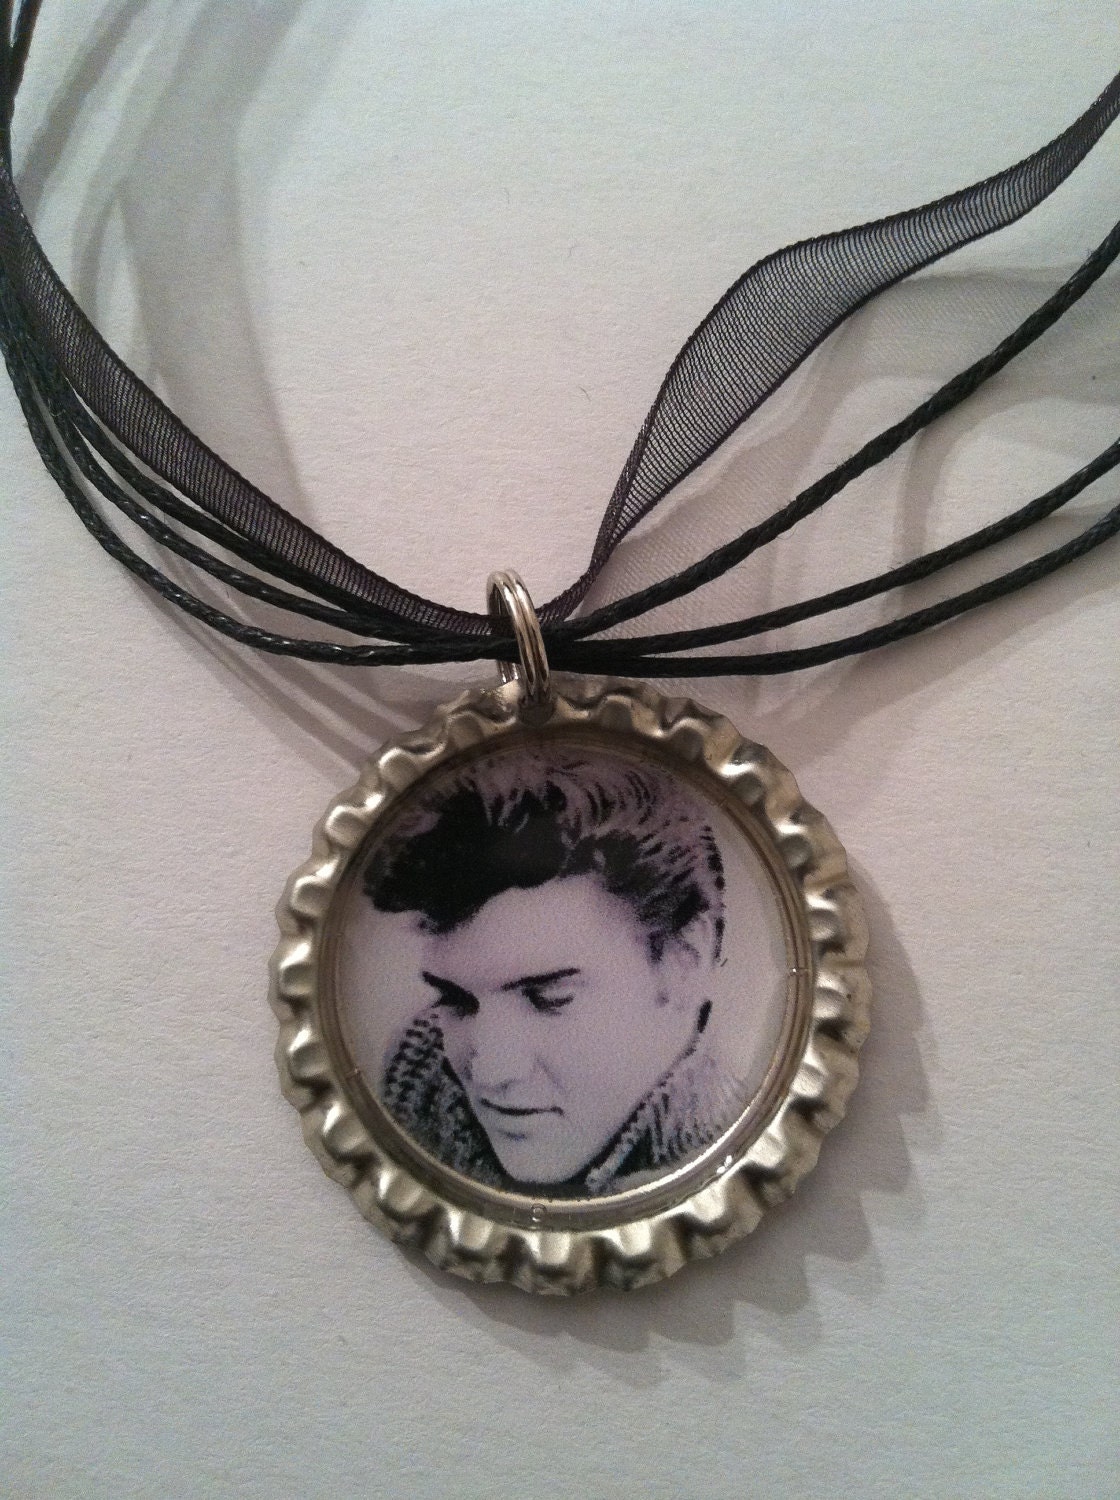 Elvis Presley Necklace